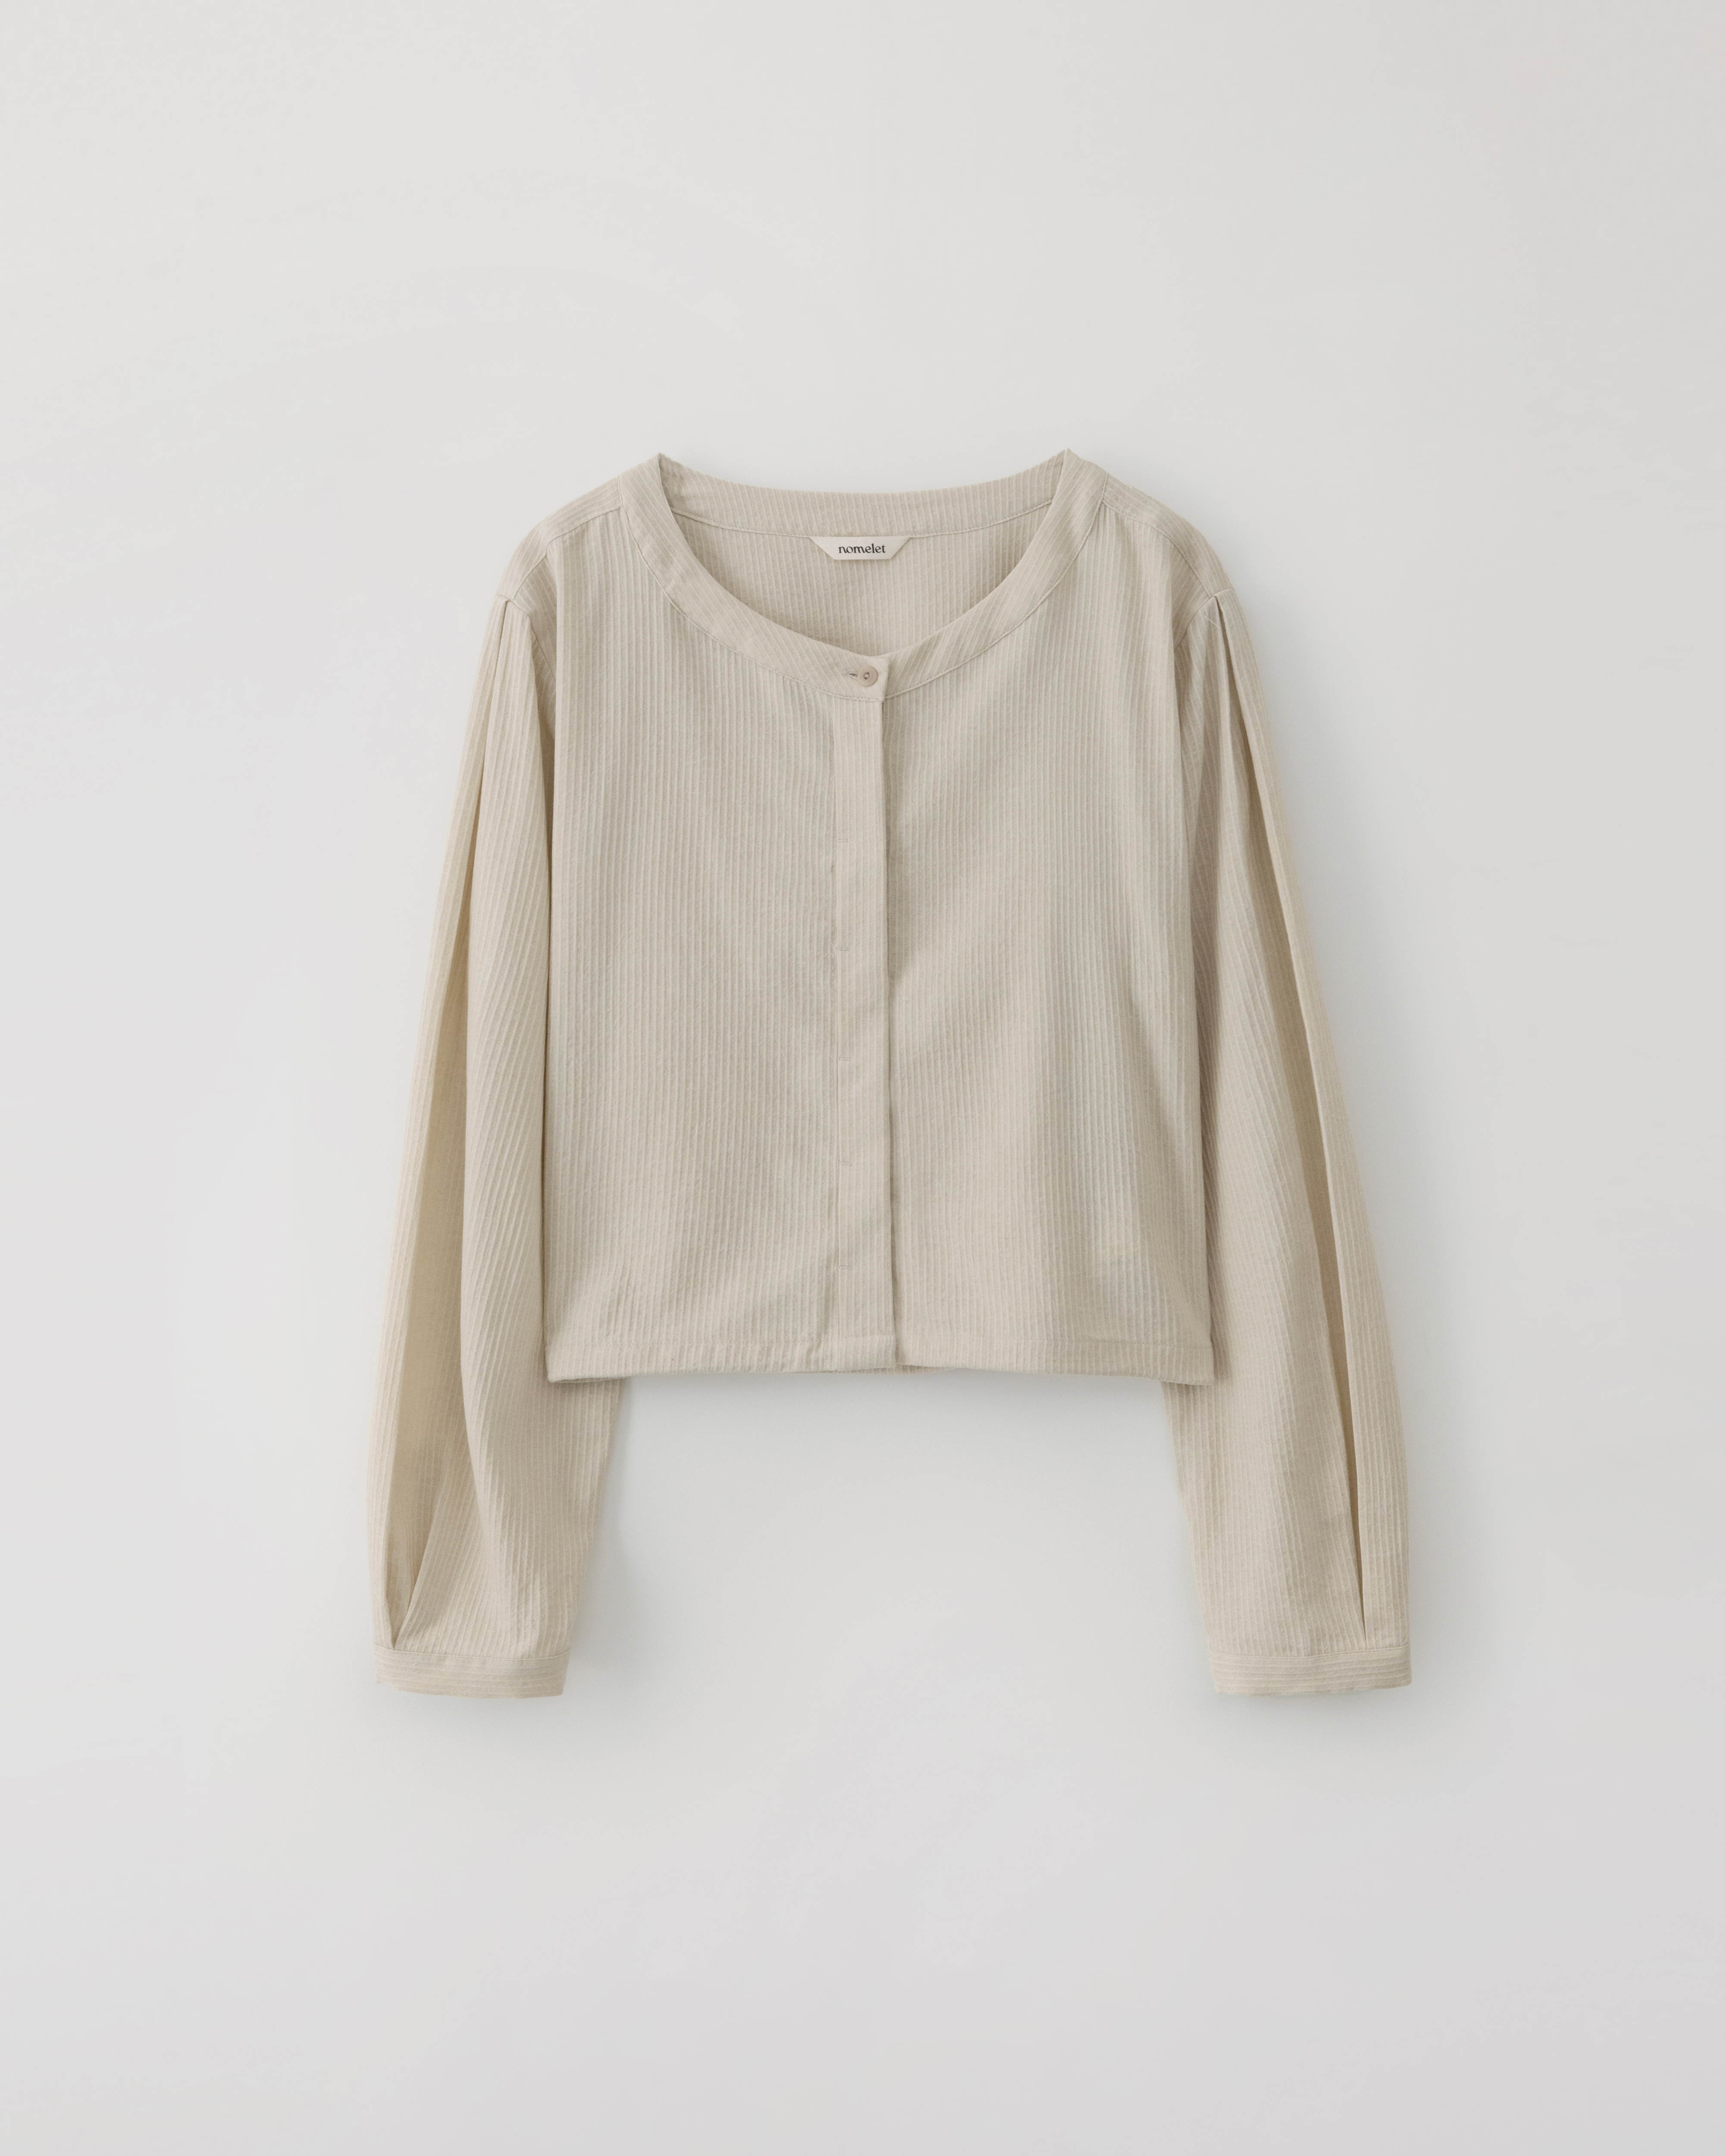 3/29(금) 발매예정 Sanderson shirt jacket - light beige